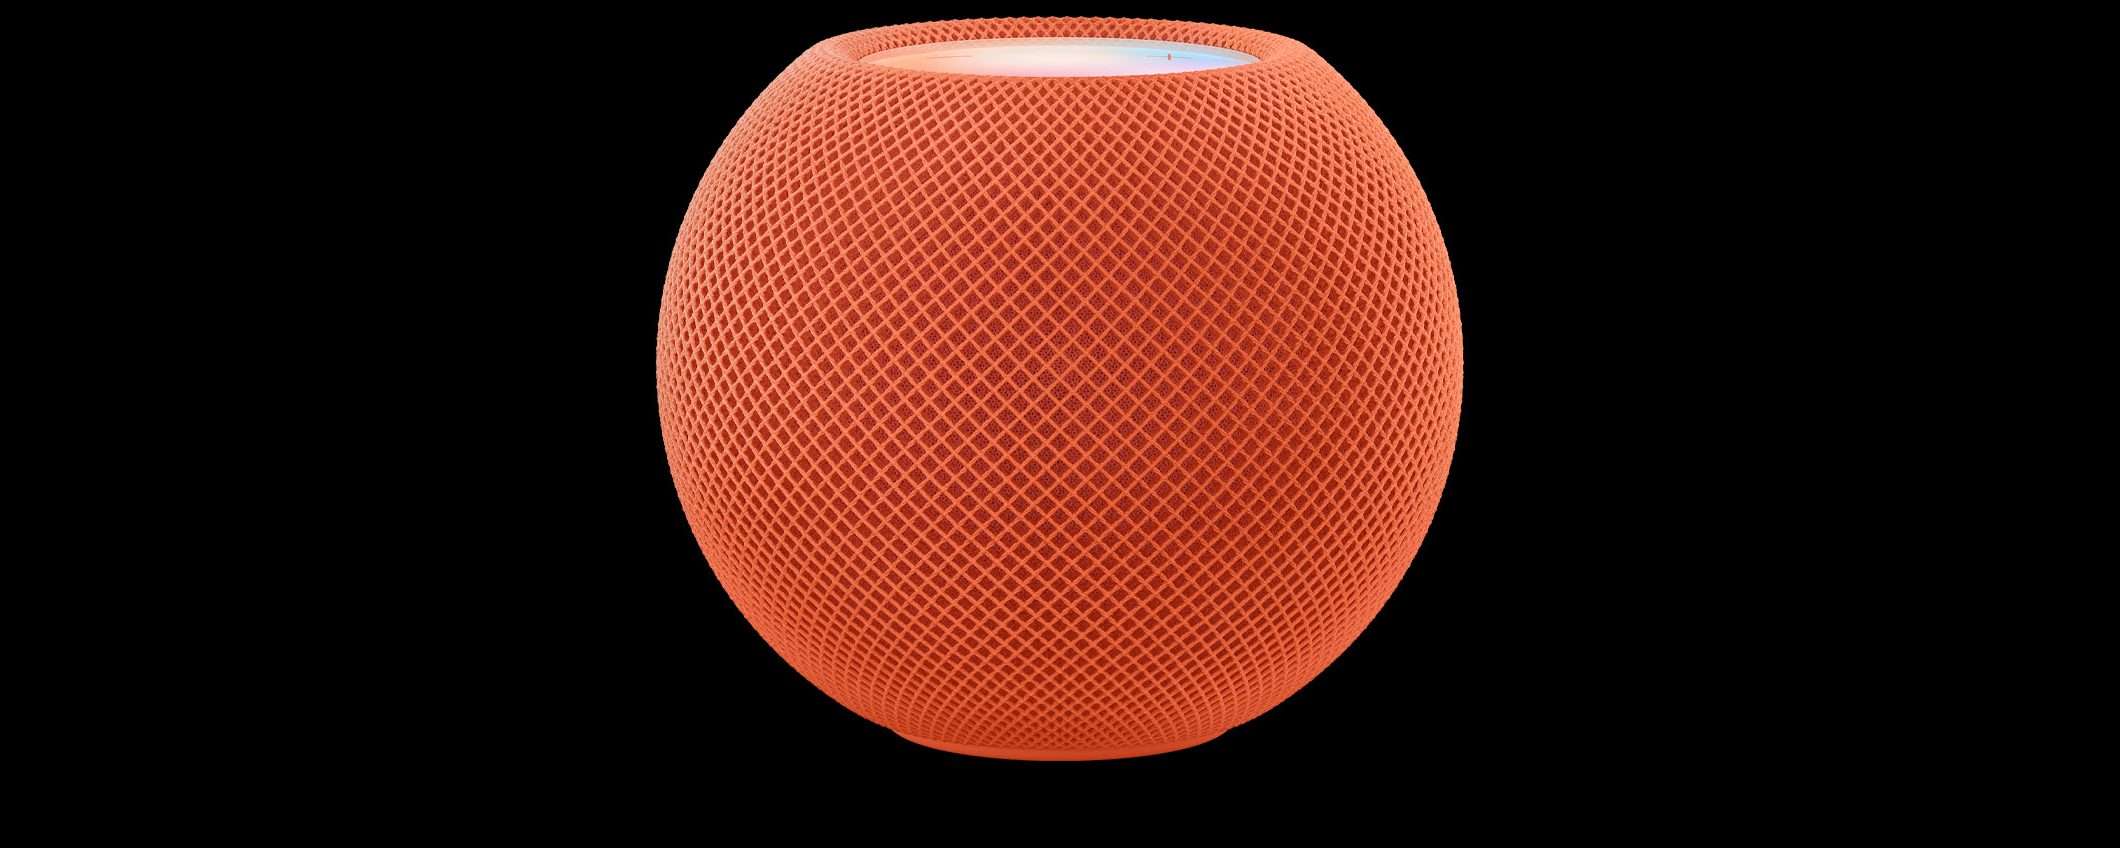 HomePod mini: Apple attiva il sensore nascosto